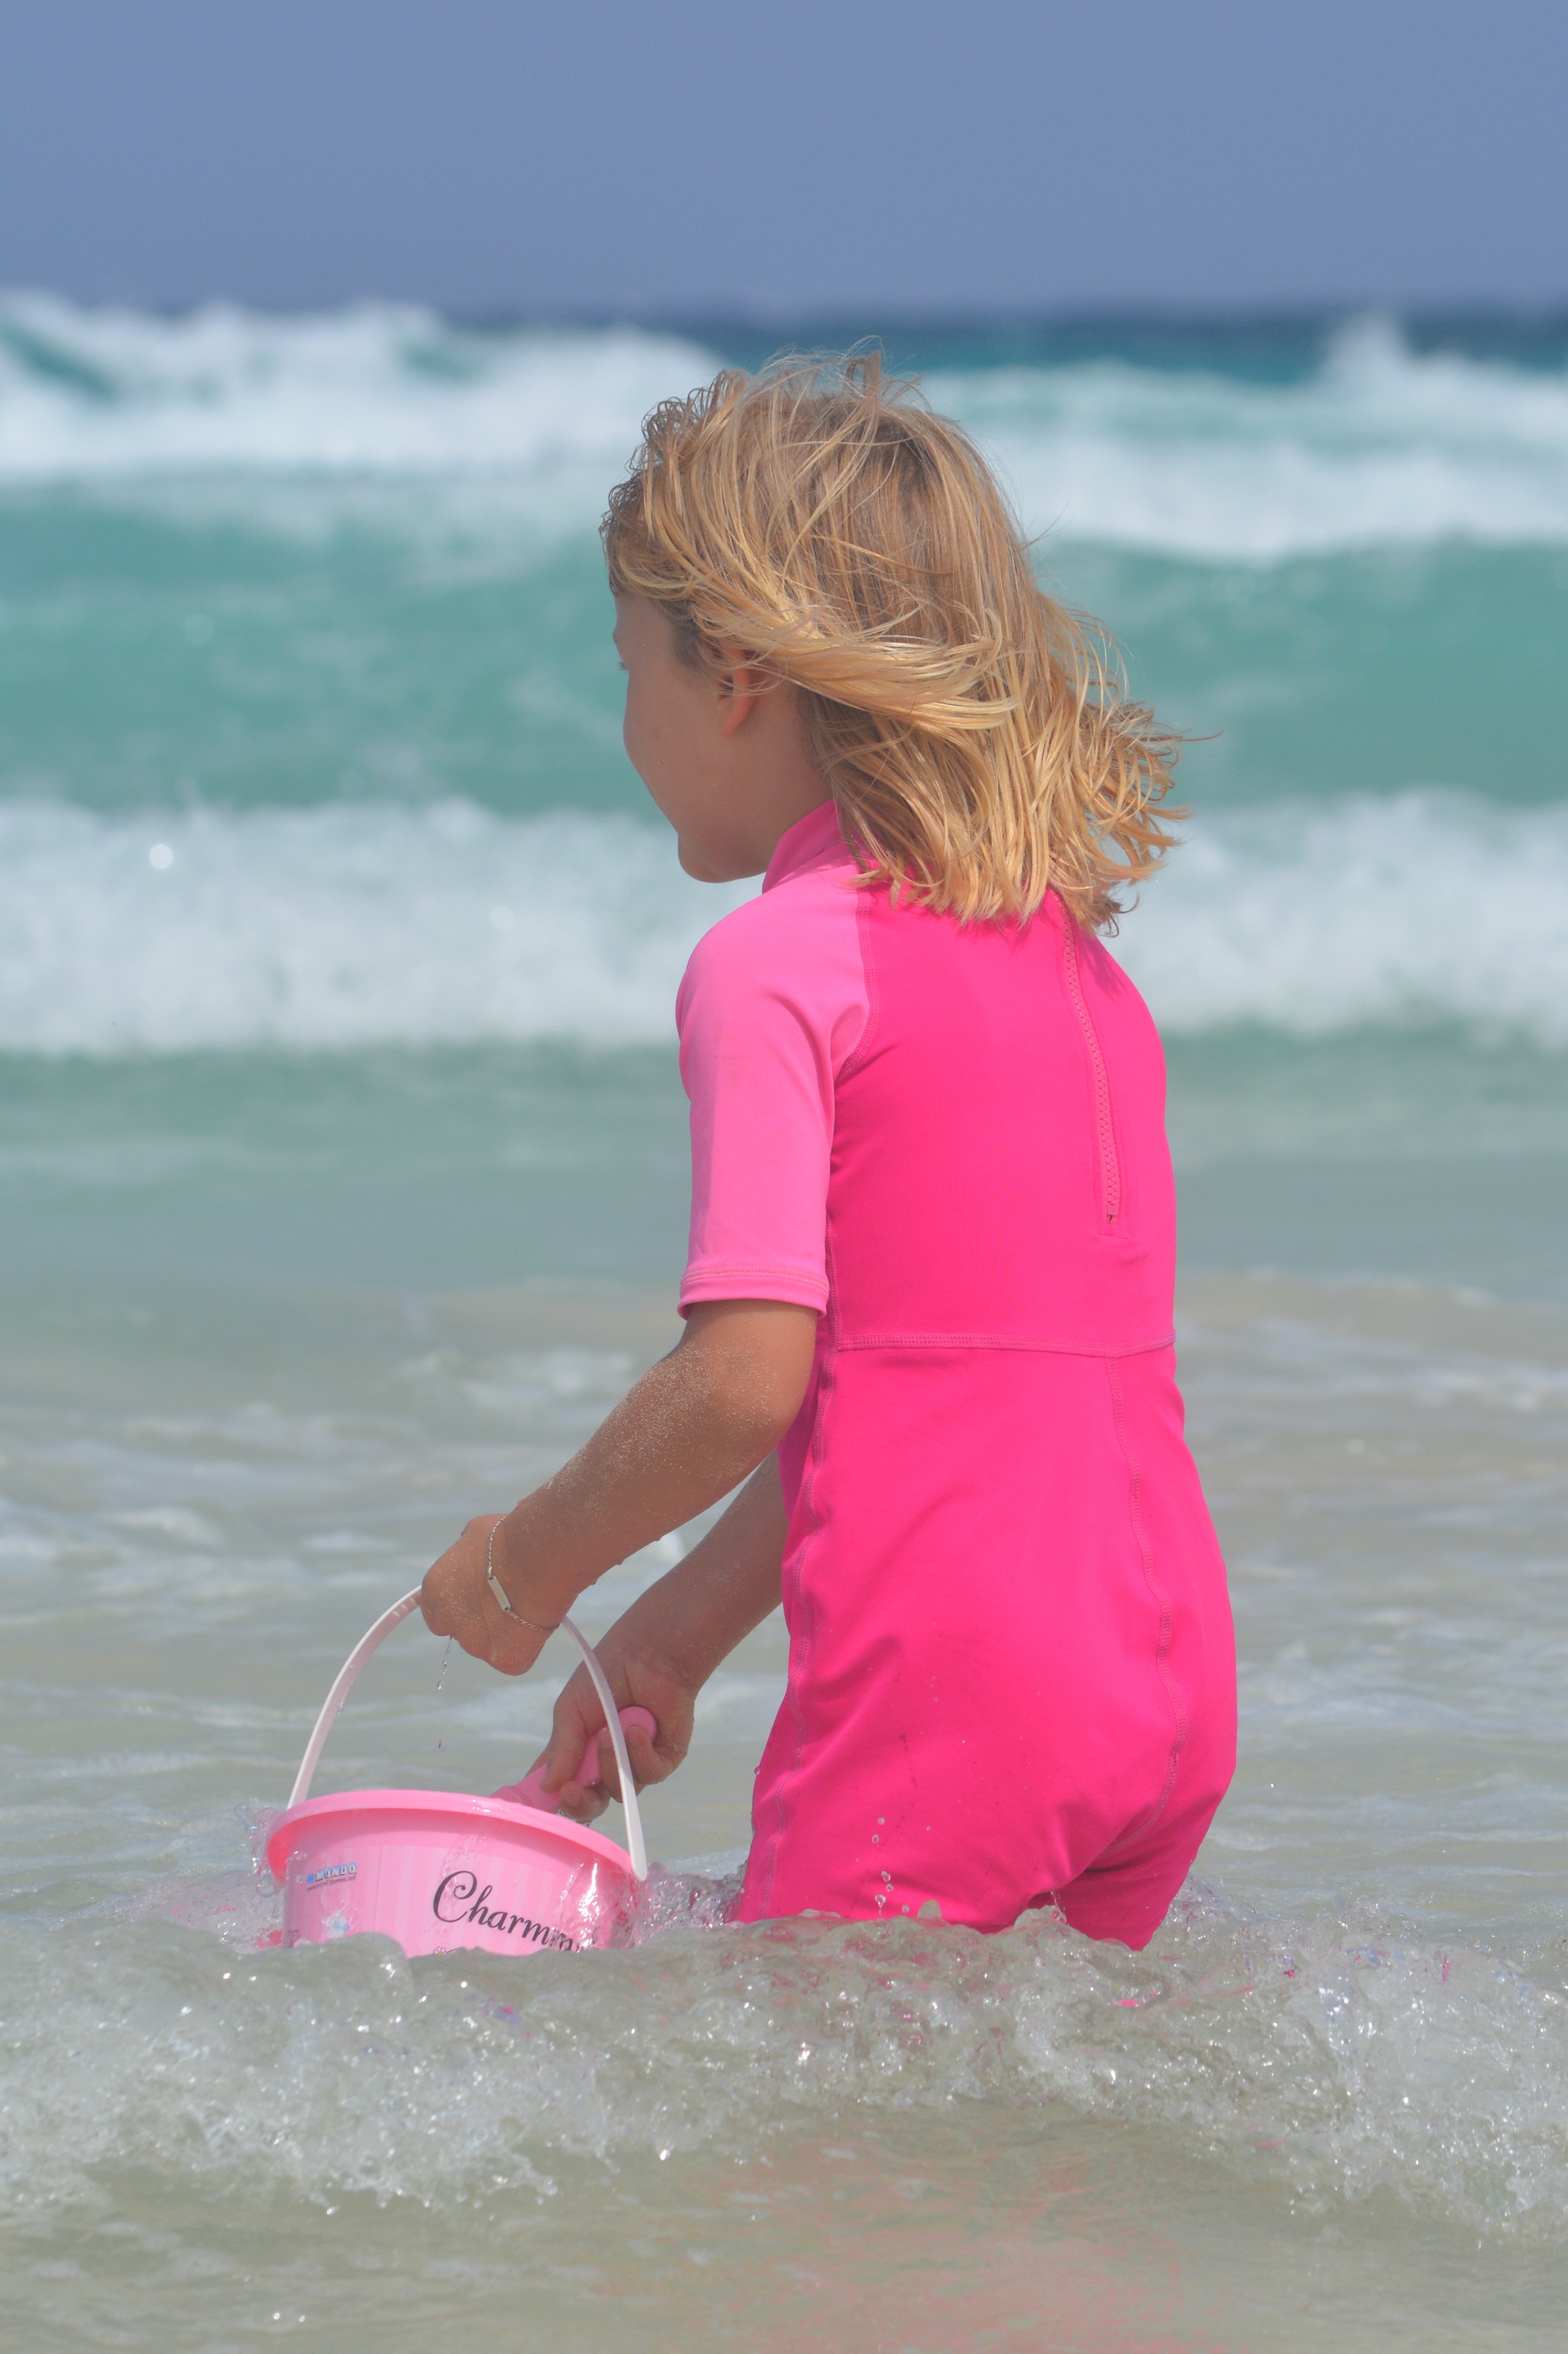 10 летние девочки на пляже